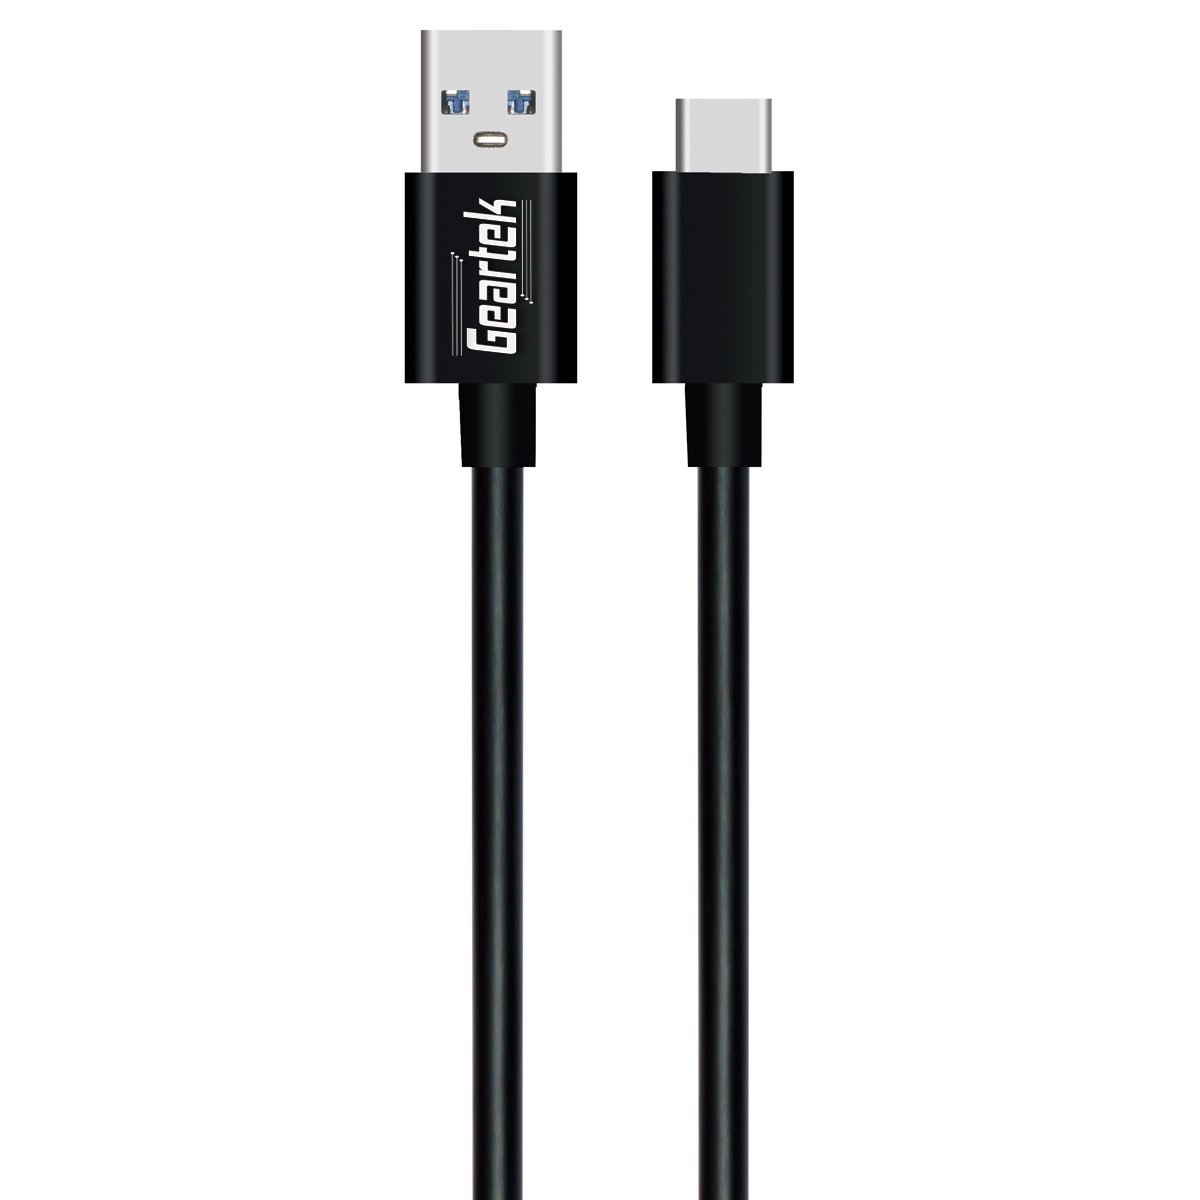 Adaptador USB tipo C a micro USB, cargador y sincronizador, material a